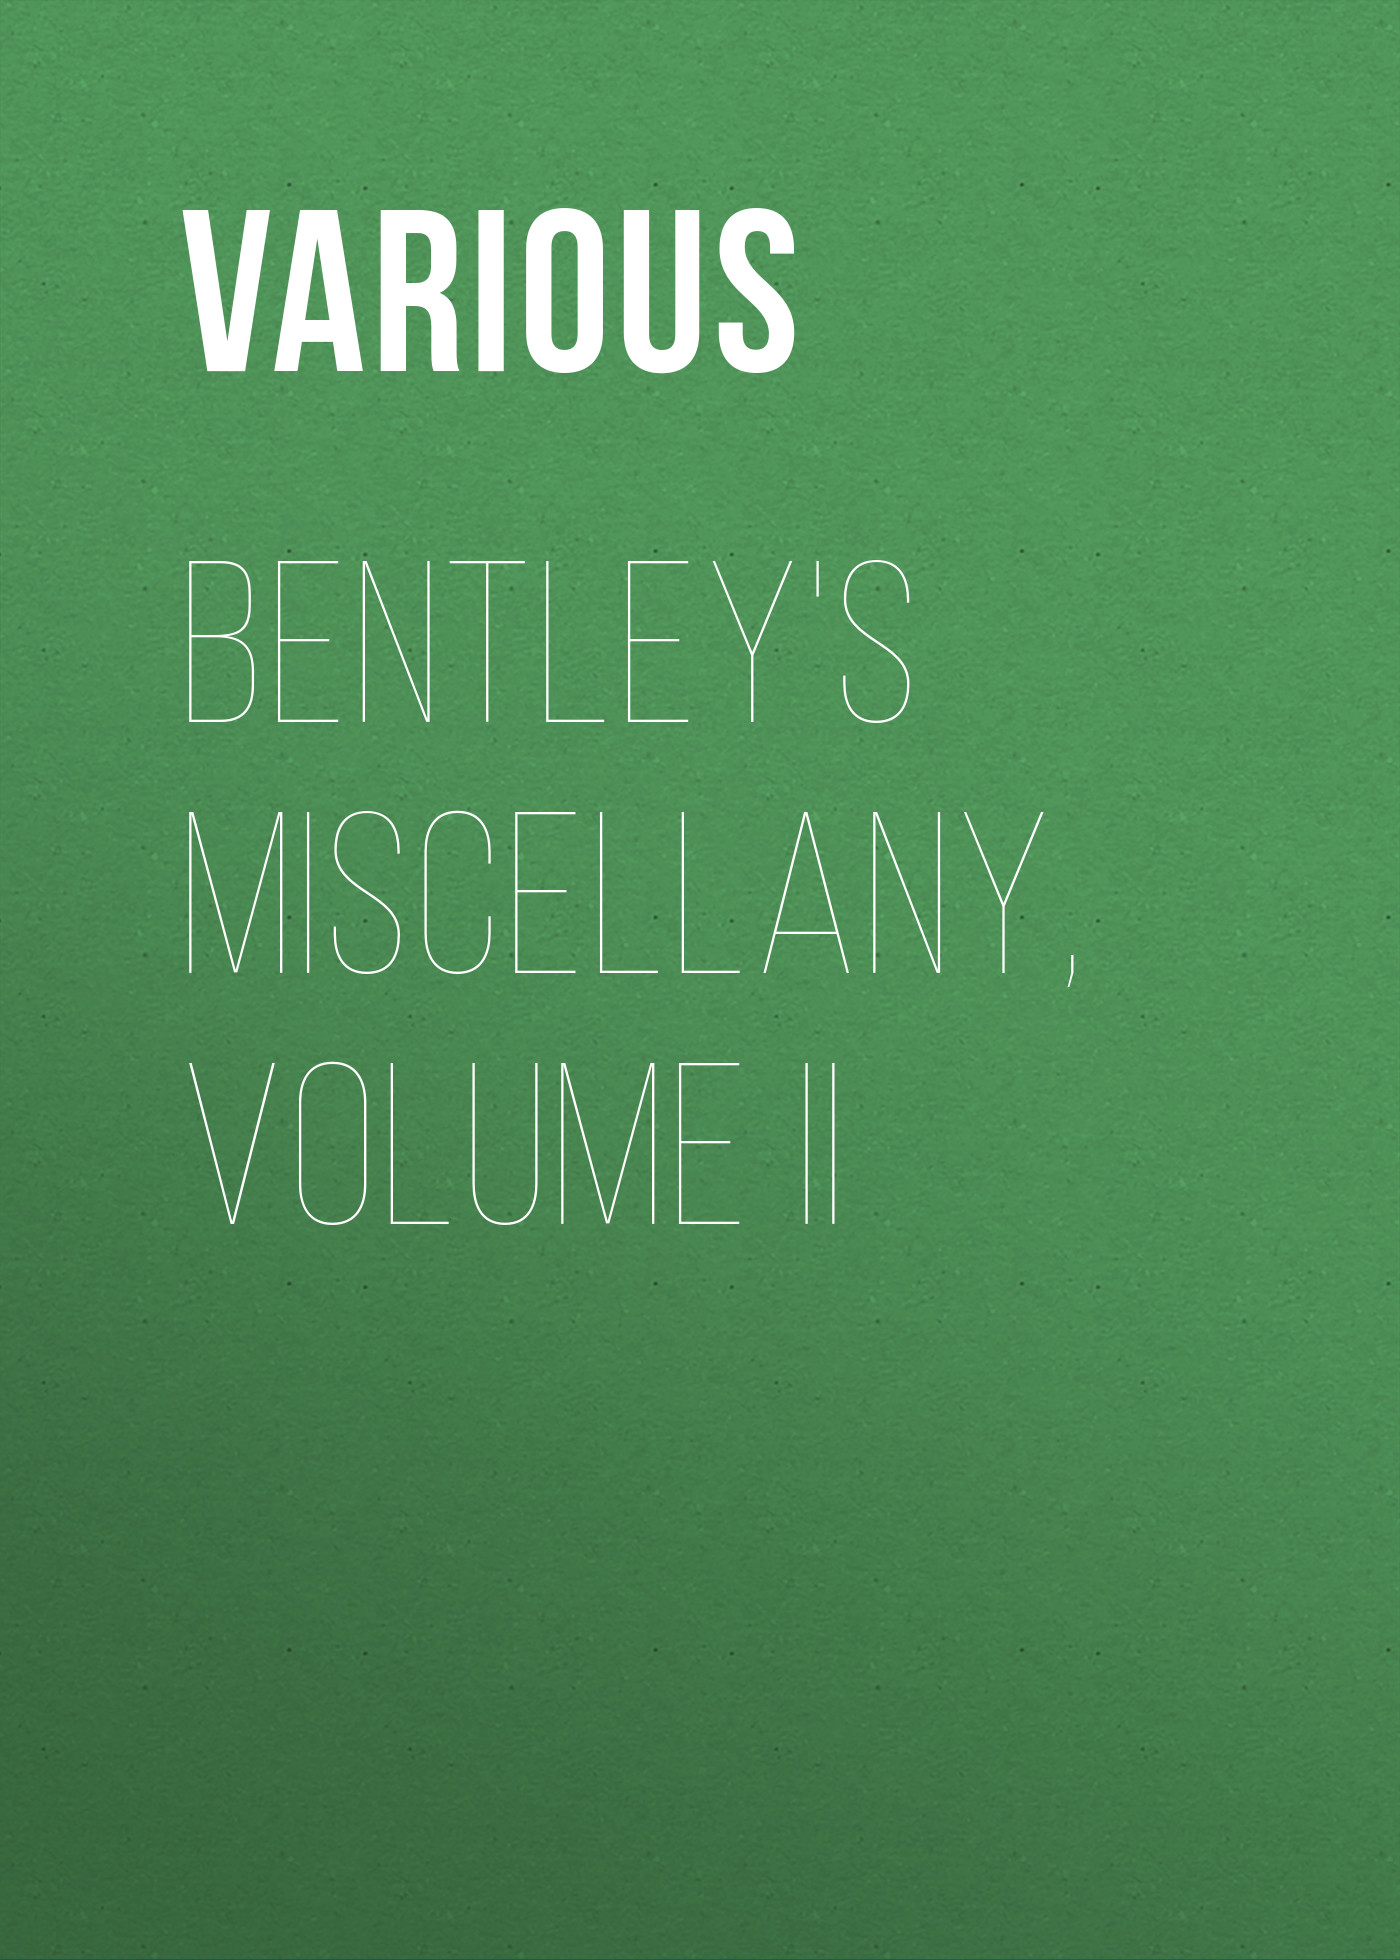 Книга Bentley's Miscellany, Volume II из серии , созданная  Various, может относится к жанру Зарубежная старинная литература, Зарубежная классика. Стоимость электронной книги Bentley's Miscellany, Volume II с идентификатором 25092916 составляет 0 руб.